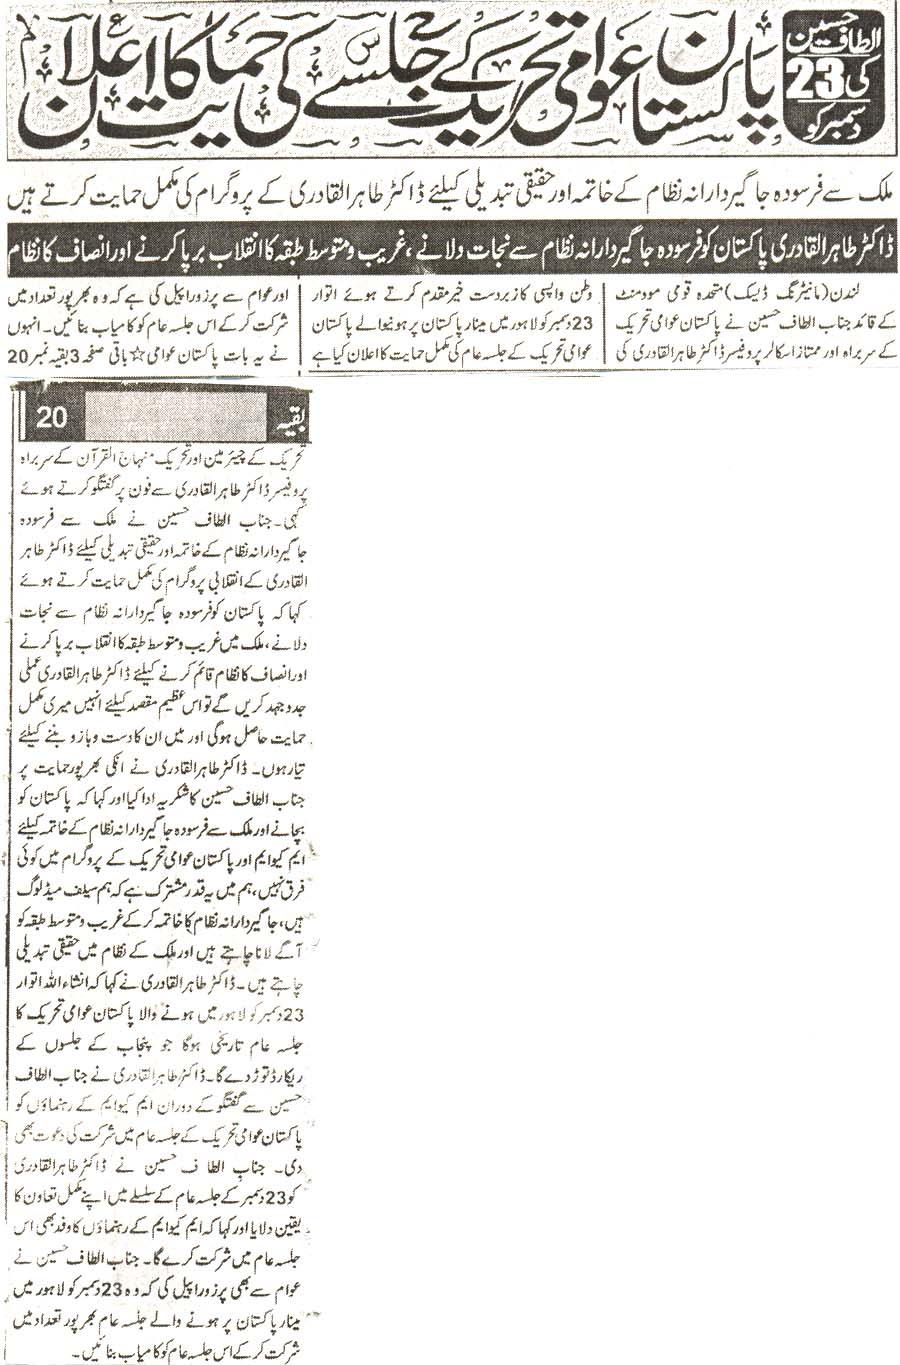 Minhaj-ul-Quran  Print Media Coveragedaily qoat karachi page 3